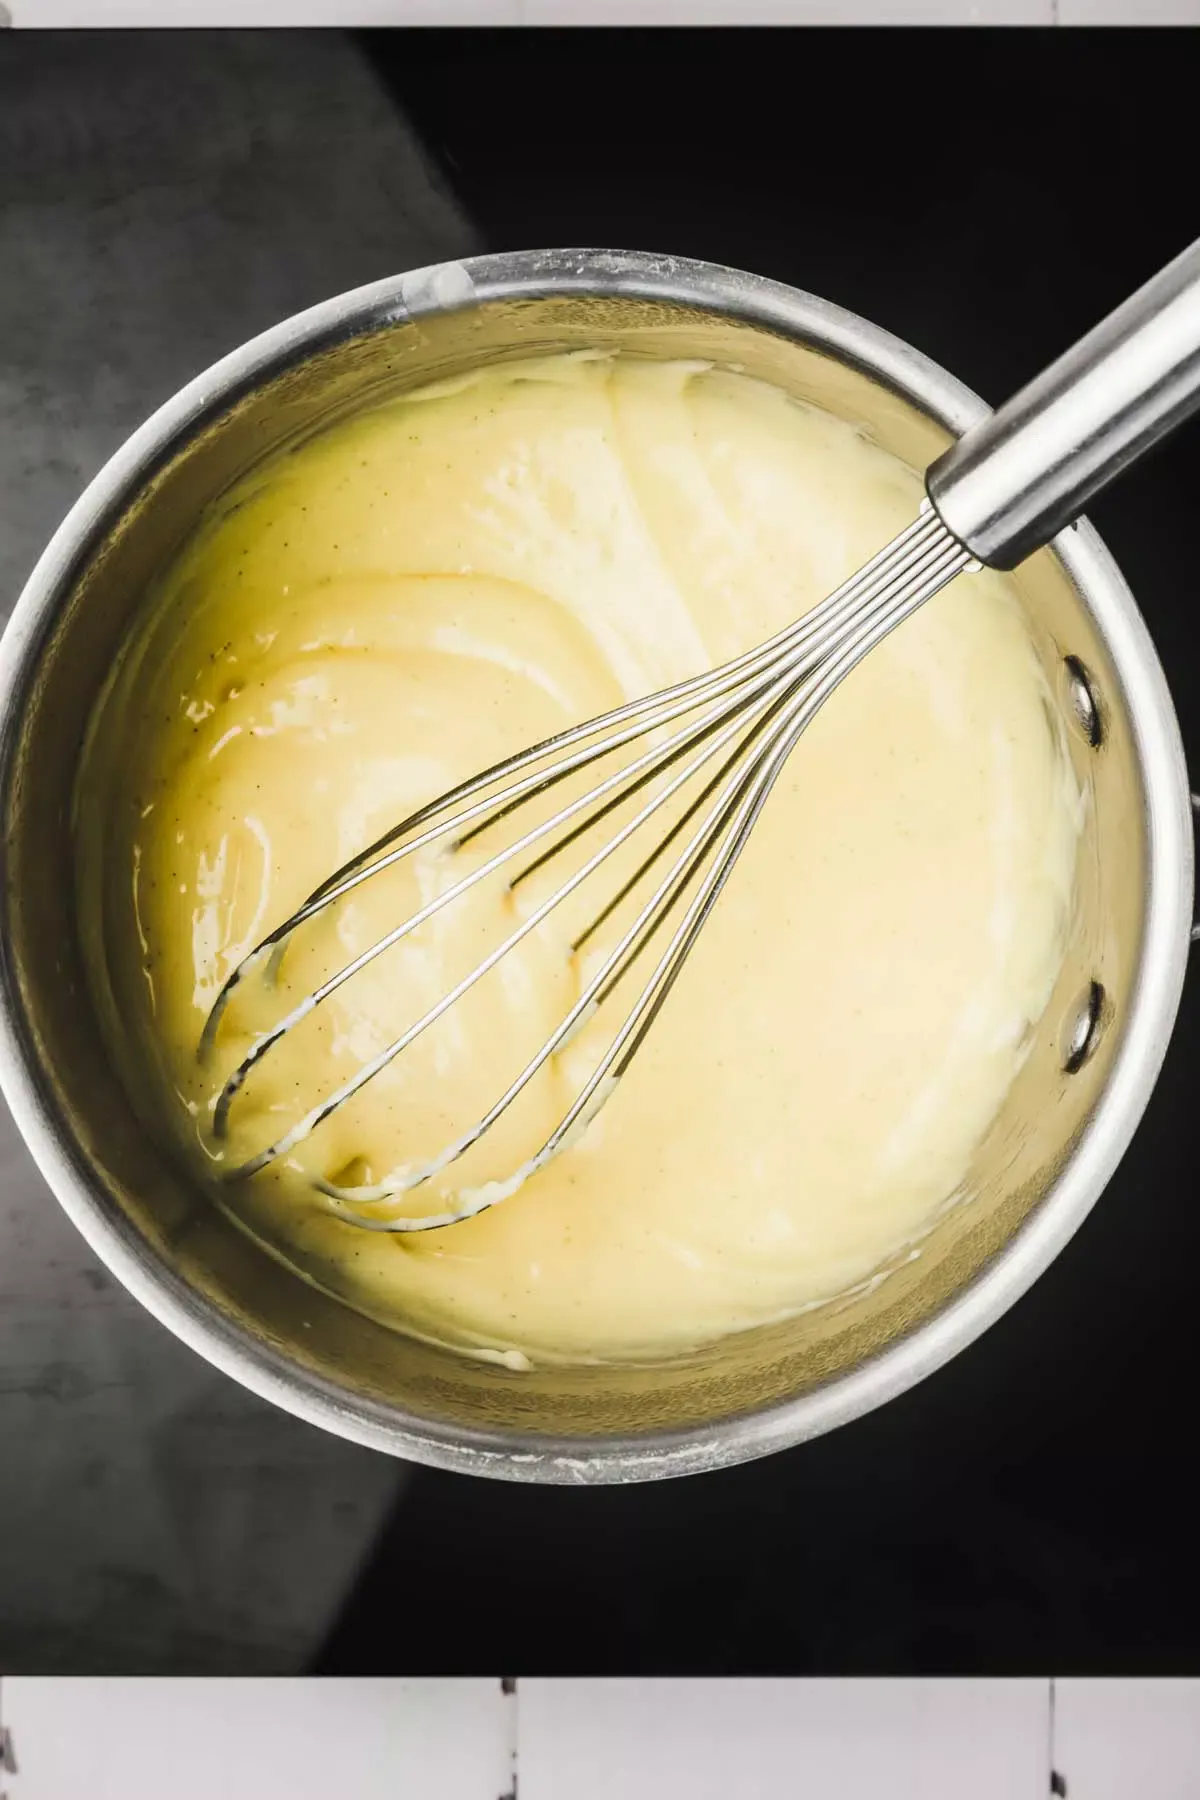 Crème pâtissière dans une casserole